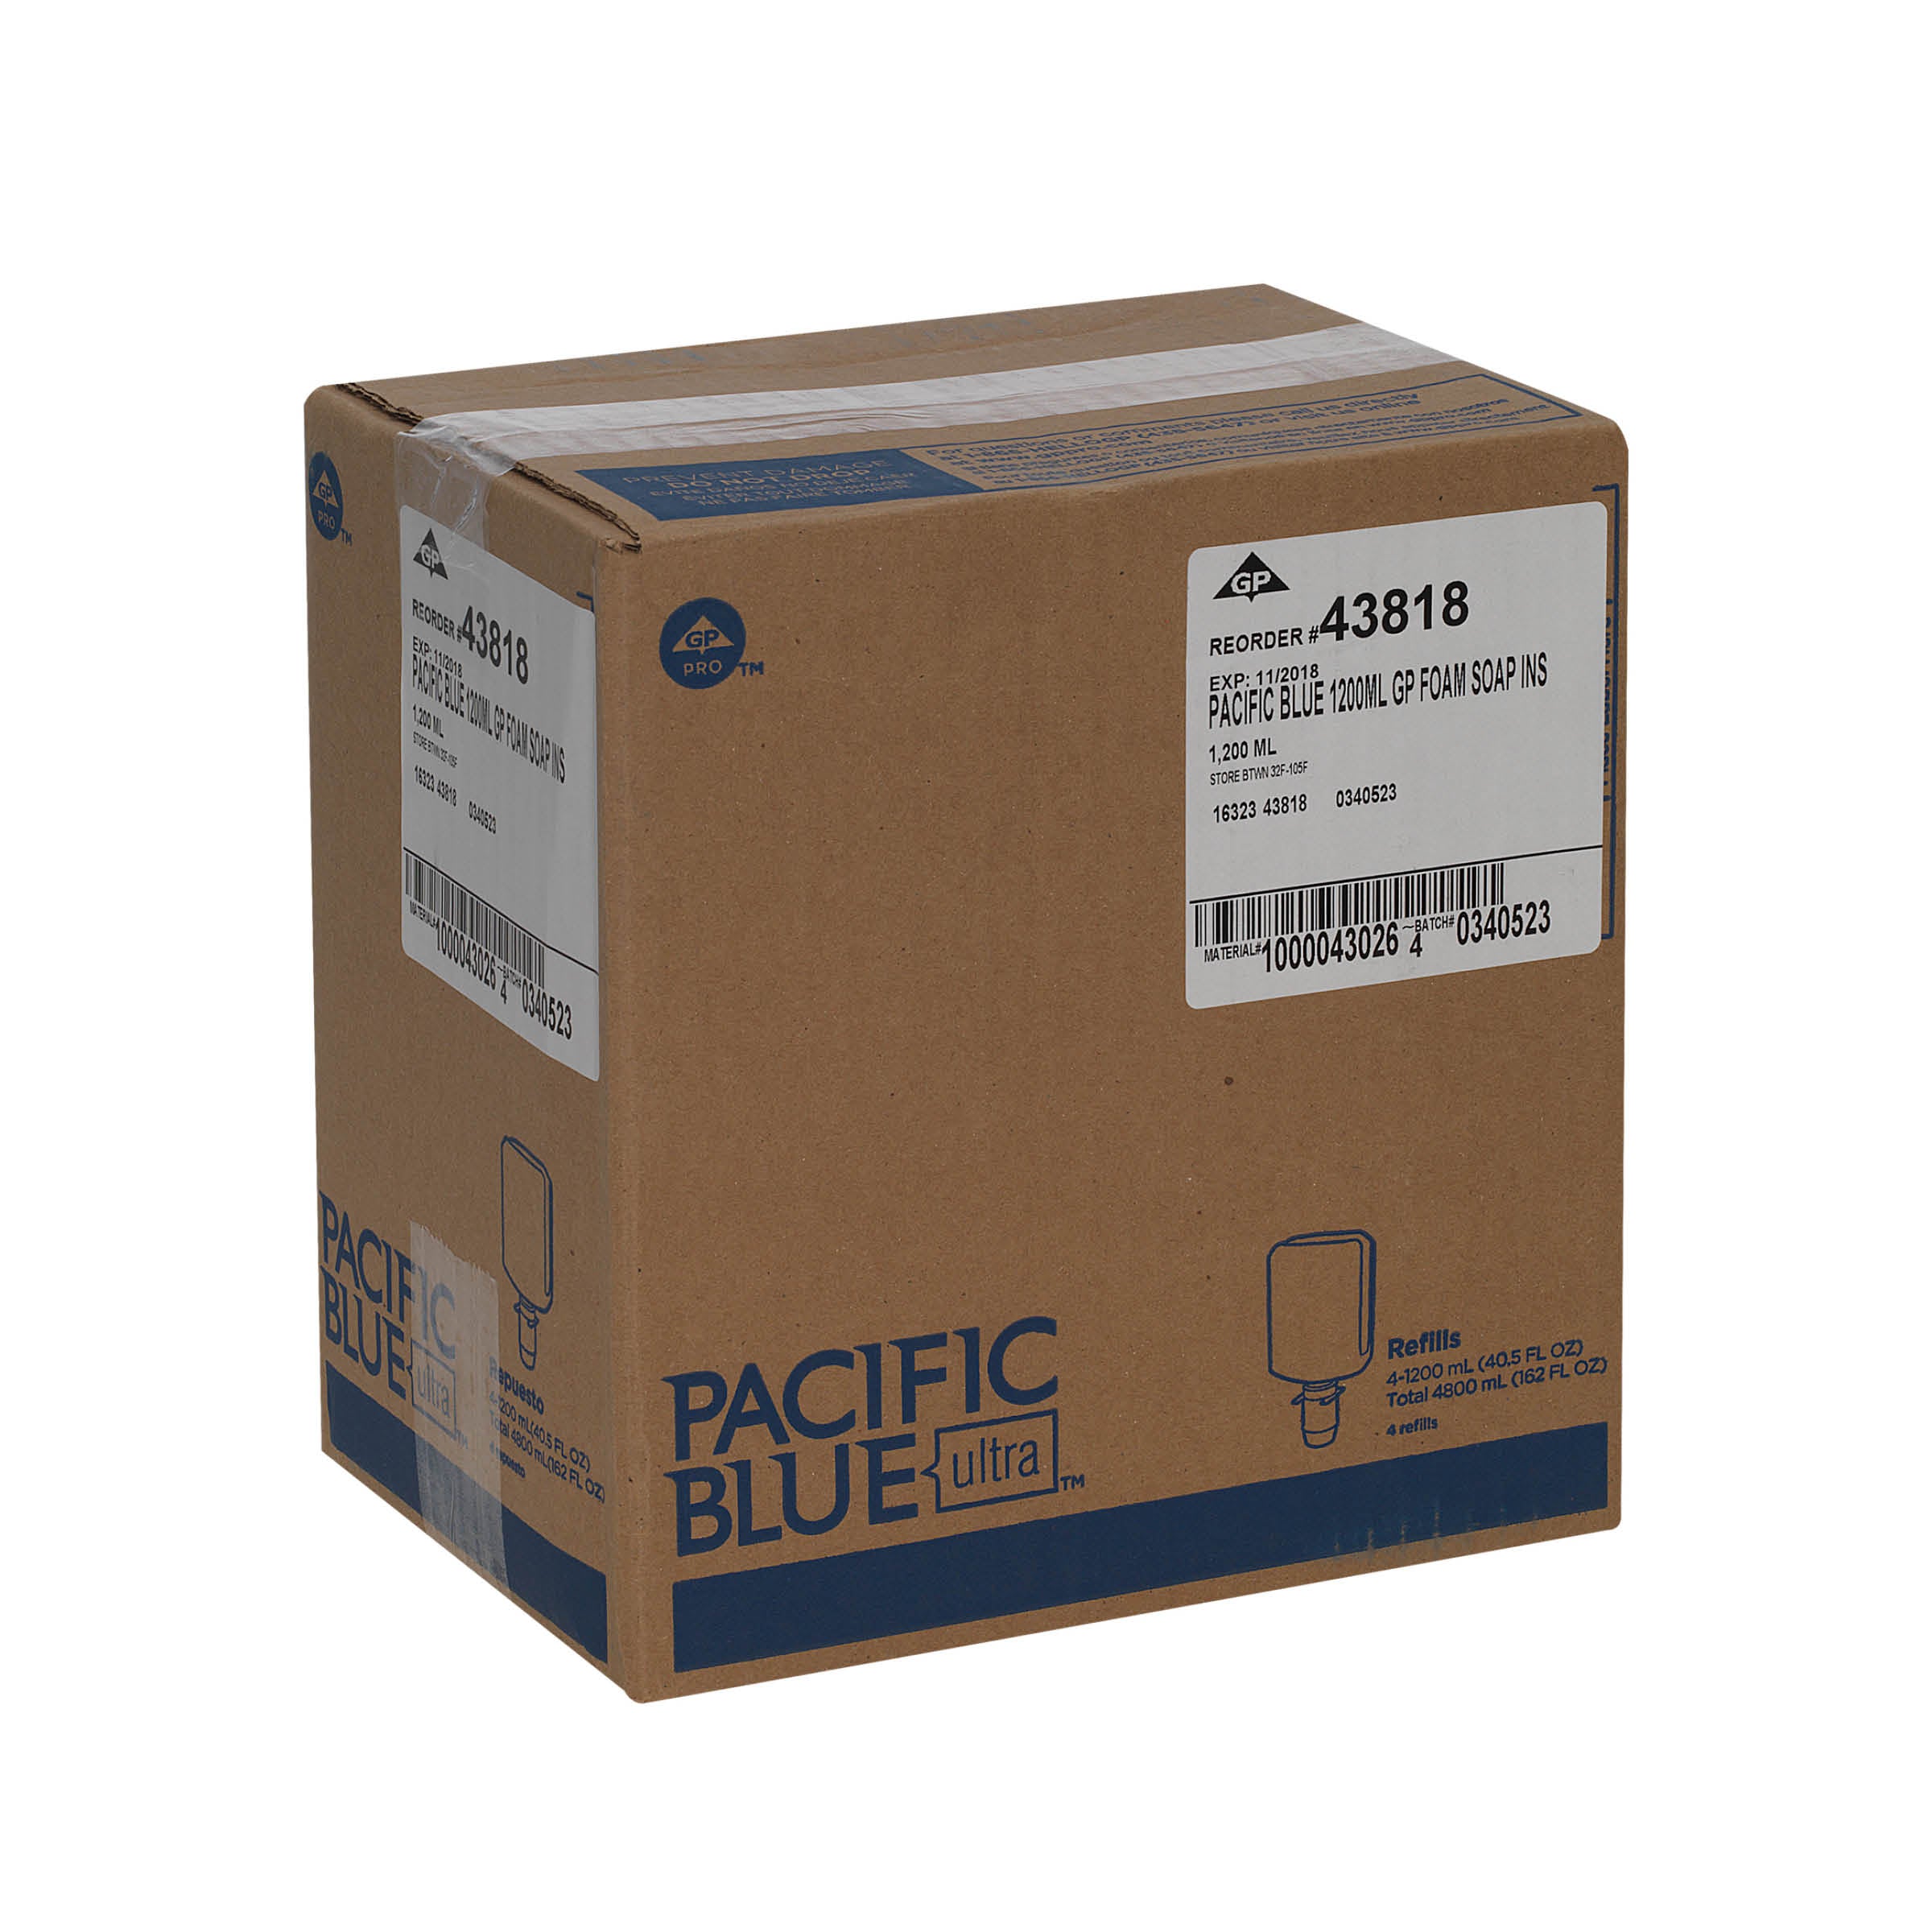 סבון ידיים מוקצף אנטי מיקרוביאלי PACIFIC BLUE ULTRA™ למתקנים ידניים מבית GP PRO, ללא צבע וניחוח, (4 בקבוקים של 1,200 mL סהכ 4,800 mL)